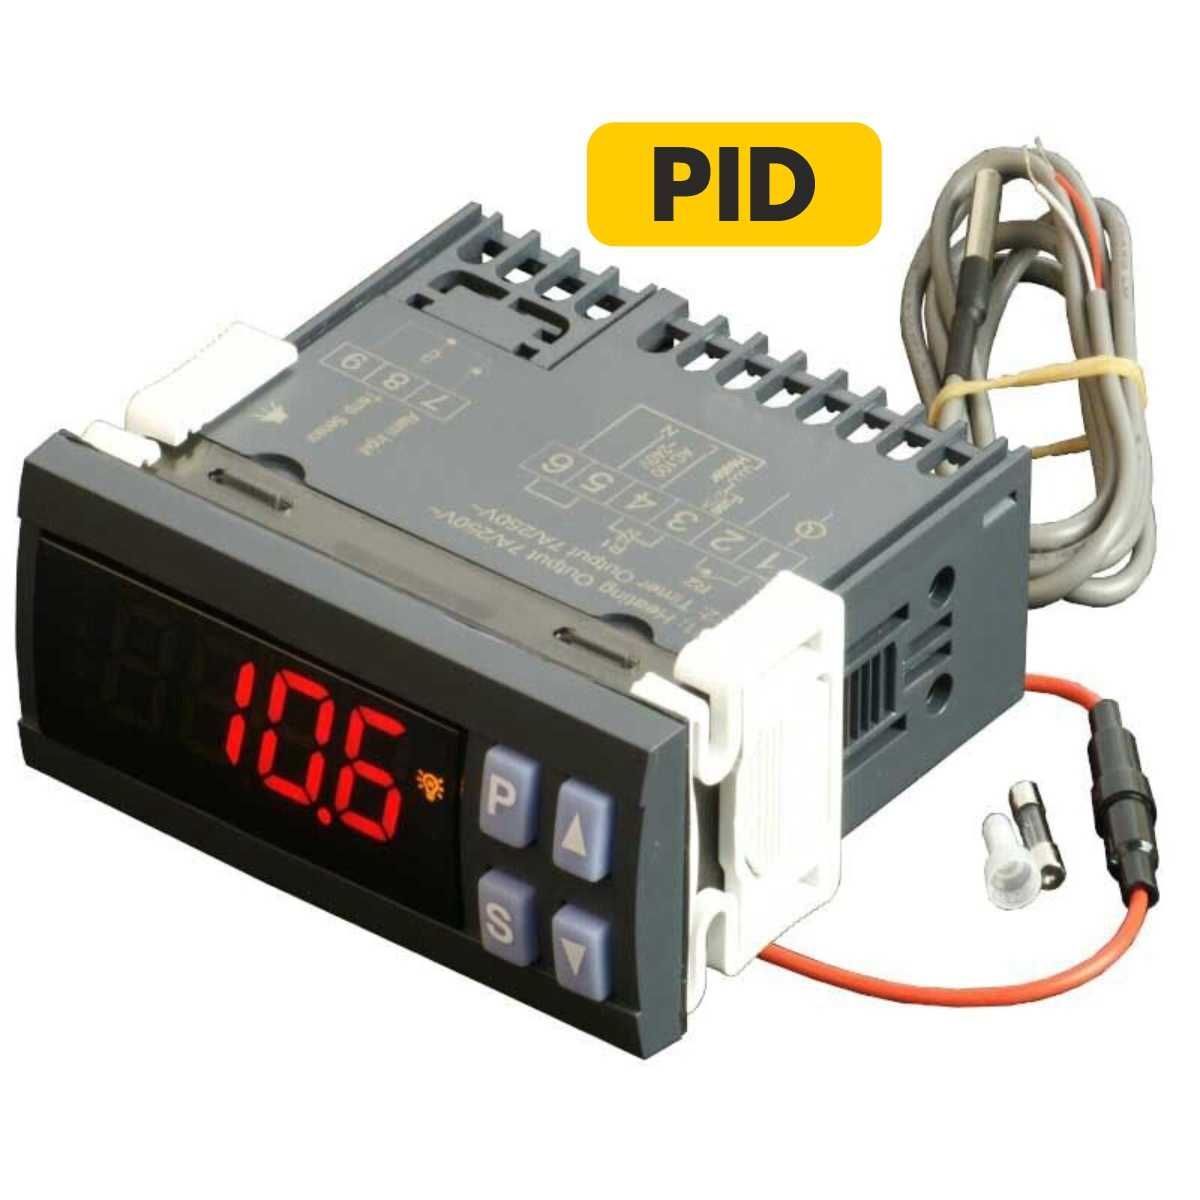 Termostato PID, precisão - Controlador de Temperatura digital 220V SSR